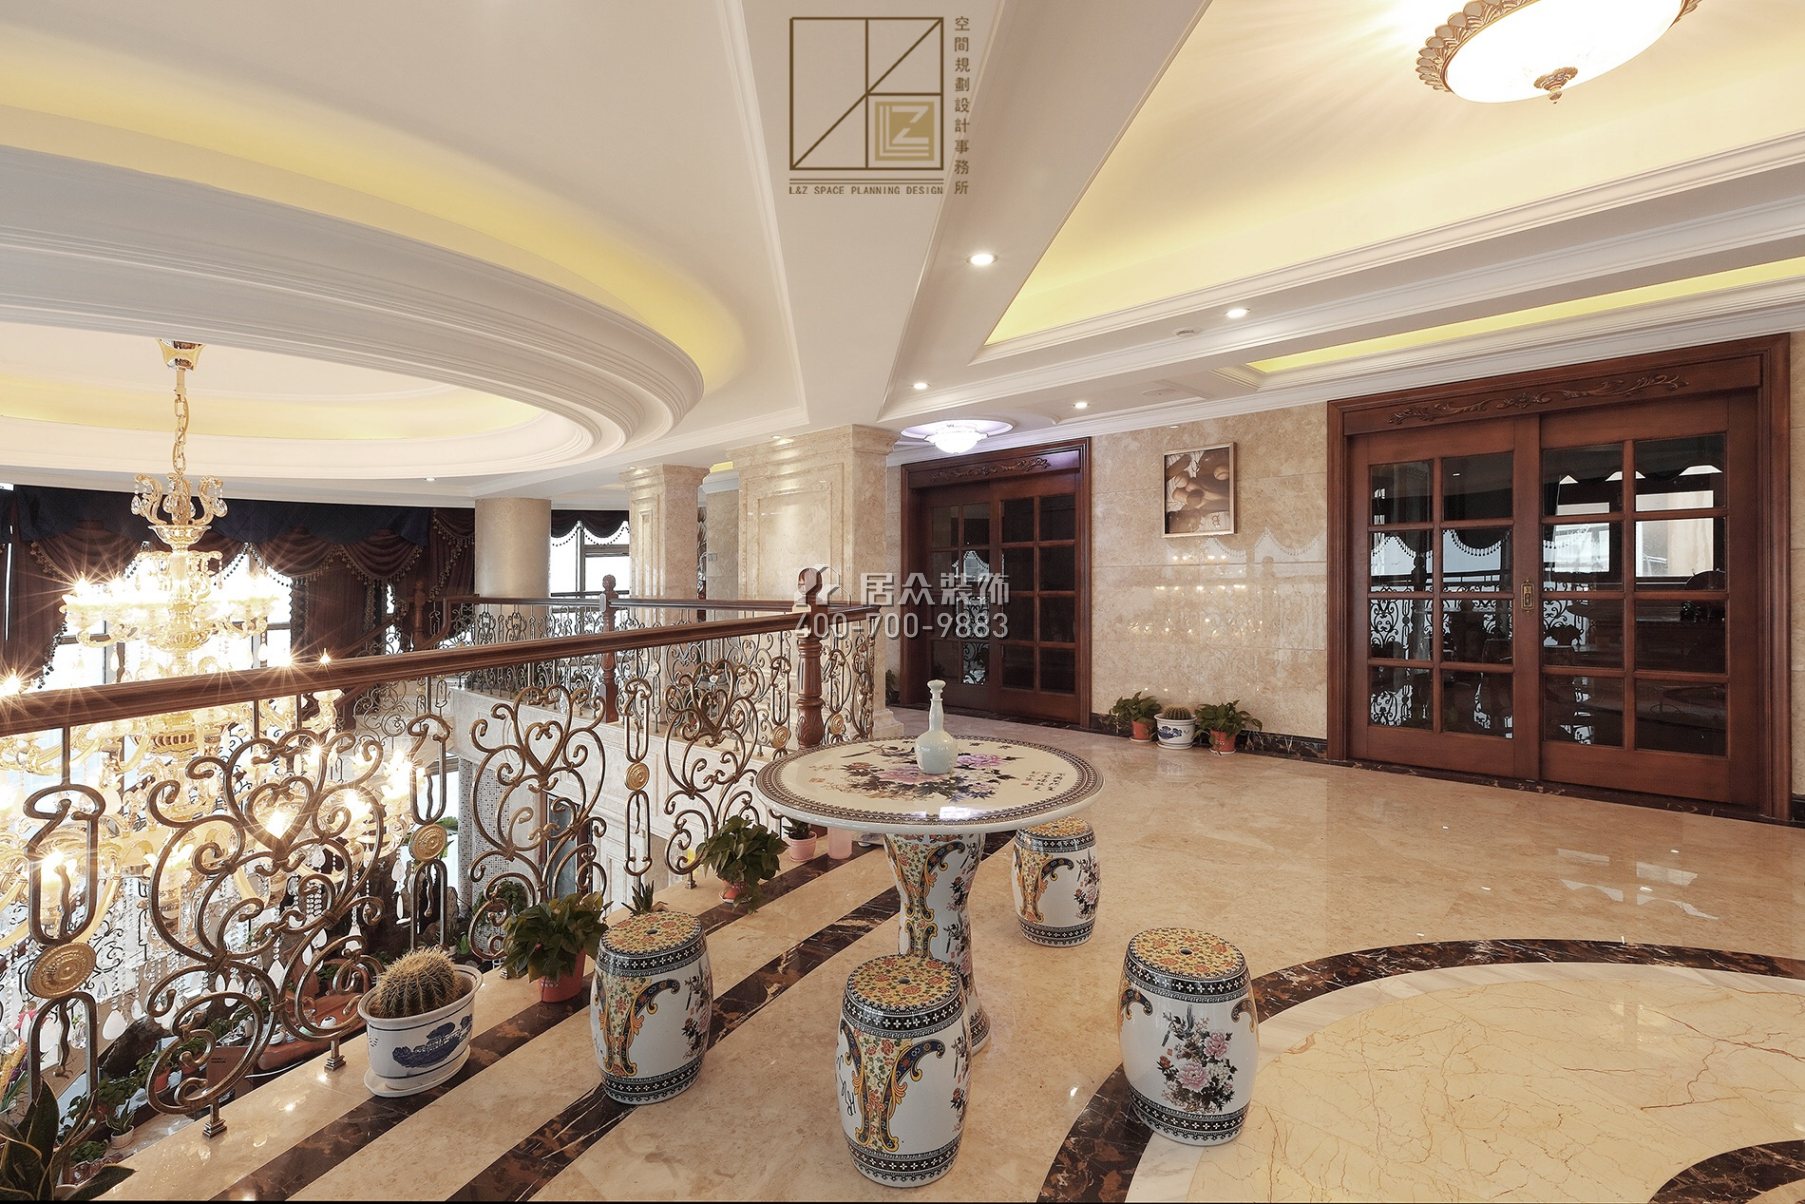 富湾国际720平方米美式风格复式户型茶室装修效果图